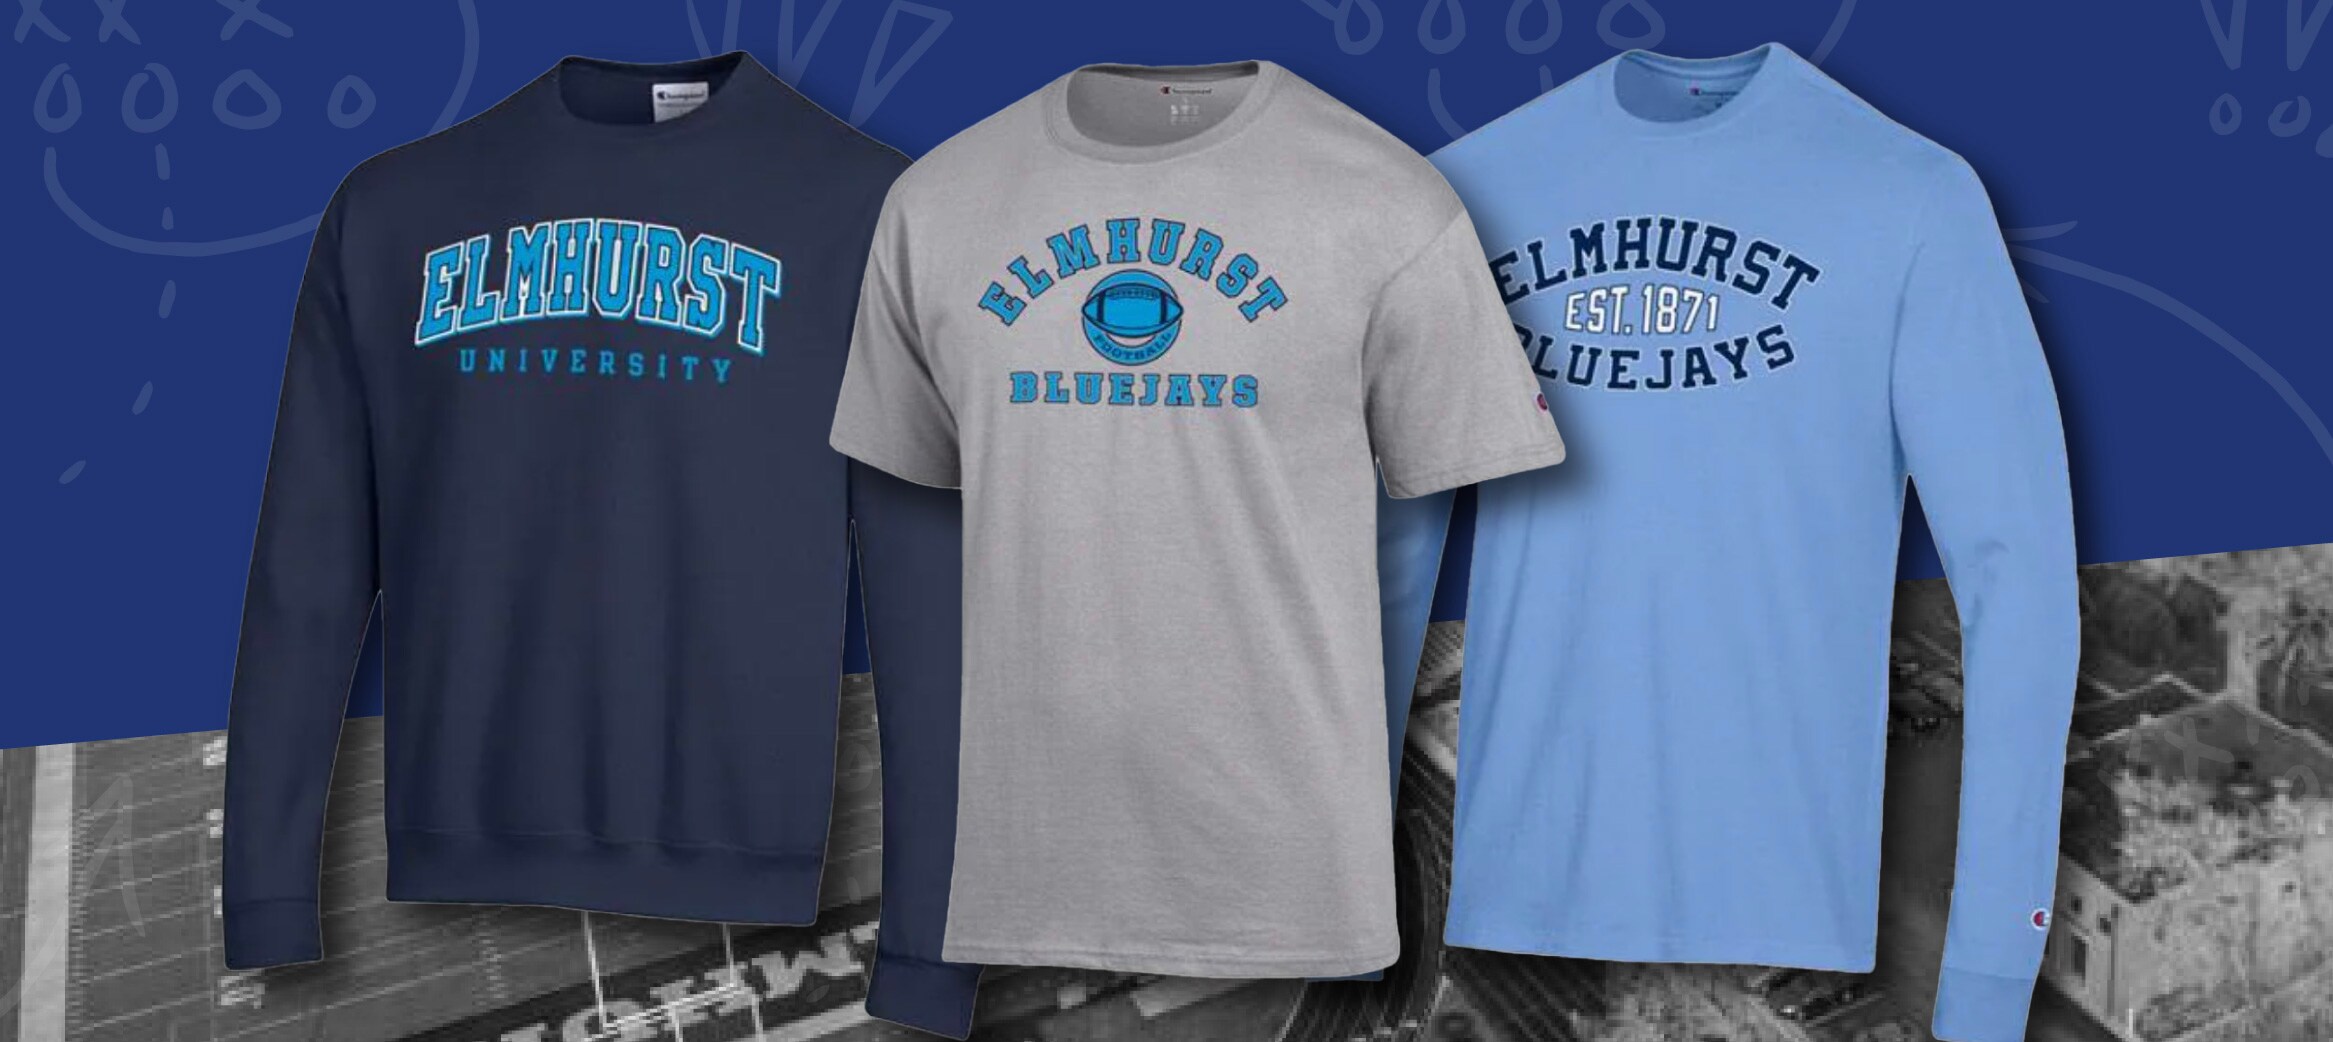 Navy Crewneck Elmhurst University, Grey T-Shirt Elmhurst Bluejays, and Light blue Elmhurst Bluejays long sleeve shirt